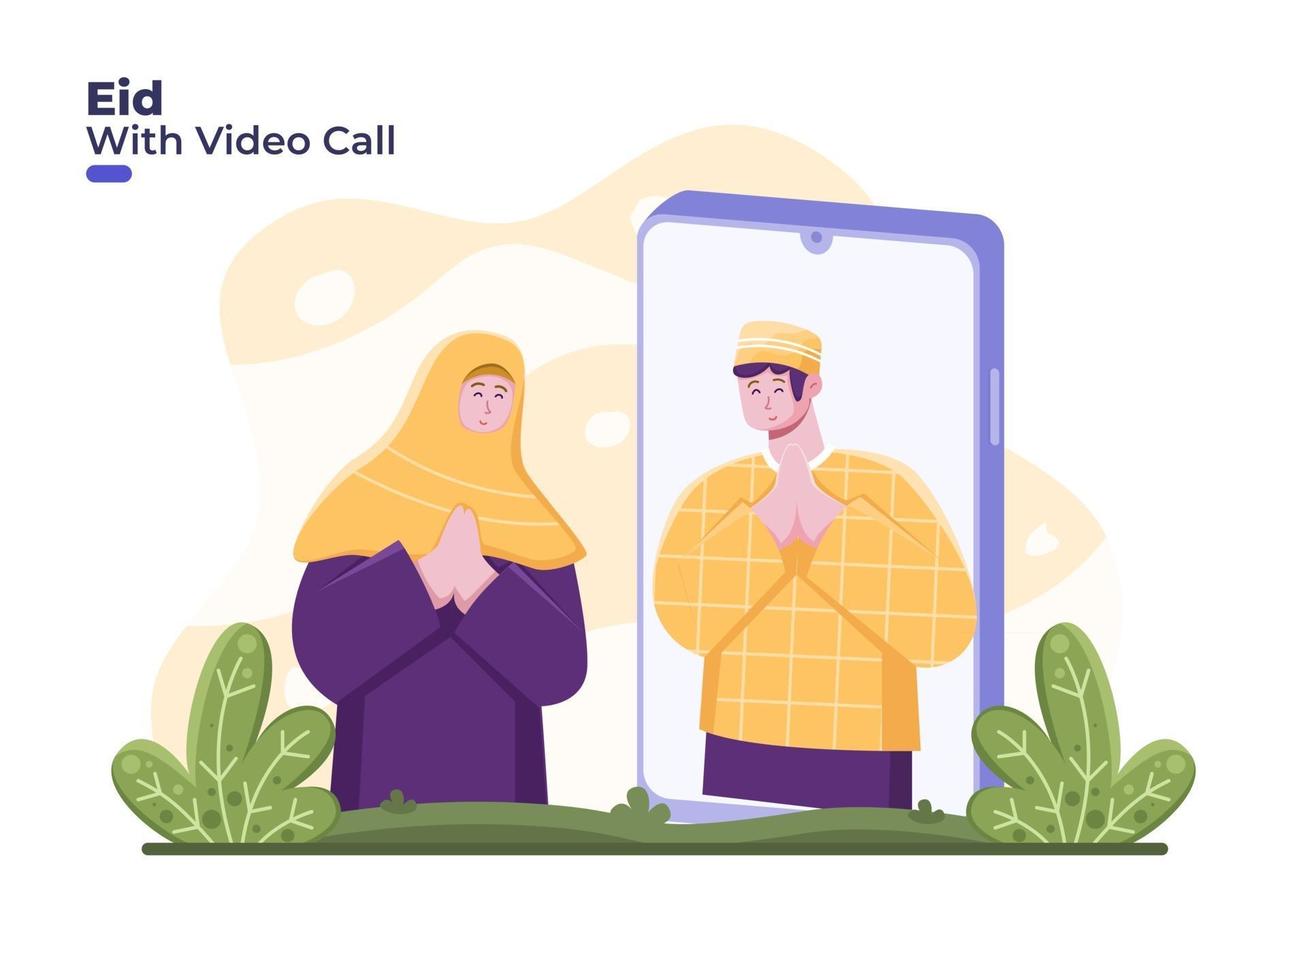 la coppia celebra eid mubarak con videochiamata online, allontanamento sociale o fisico per ridurre la diffusione del coronavirus covid 19. ramadan con videochiamata su smartphone. perdonatevi a vicenda durante l'eid vettore